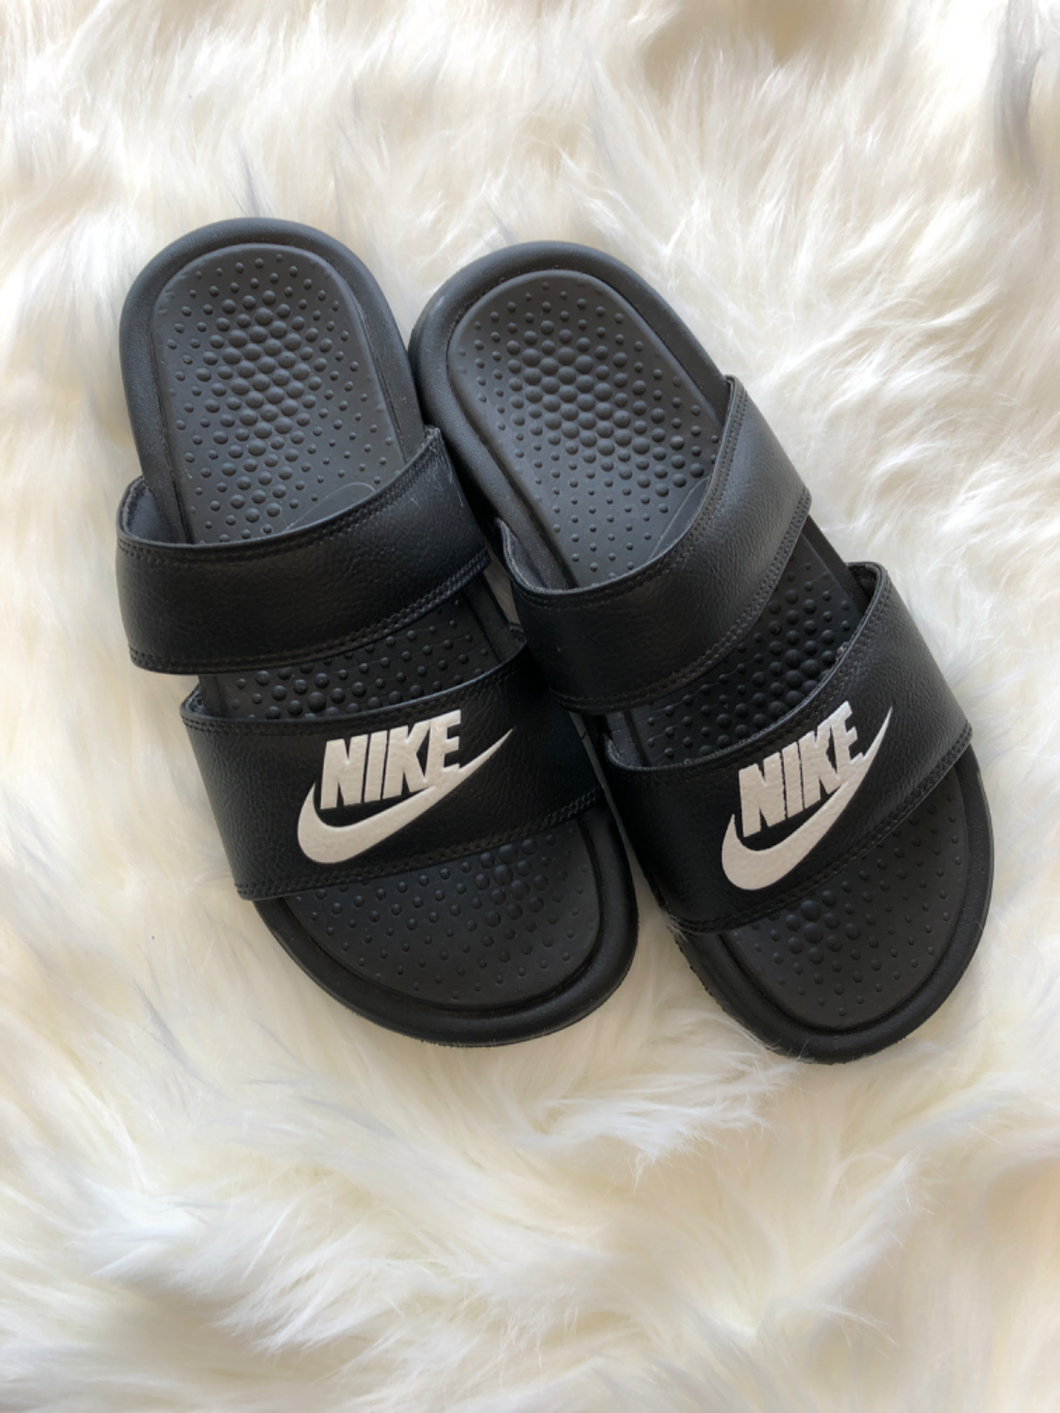 Nike Sandals Womens 5